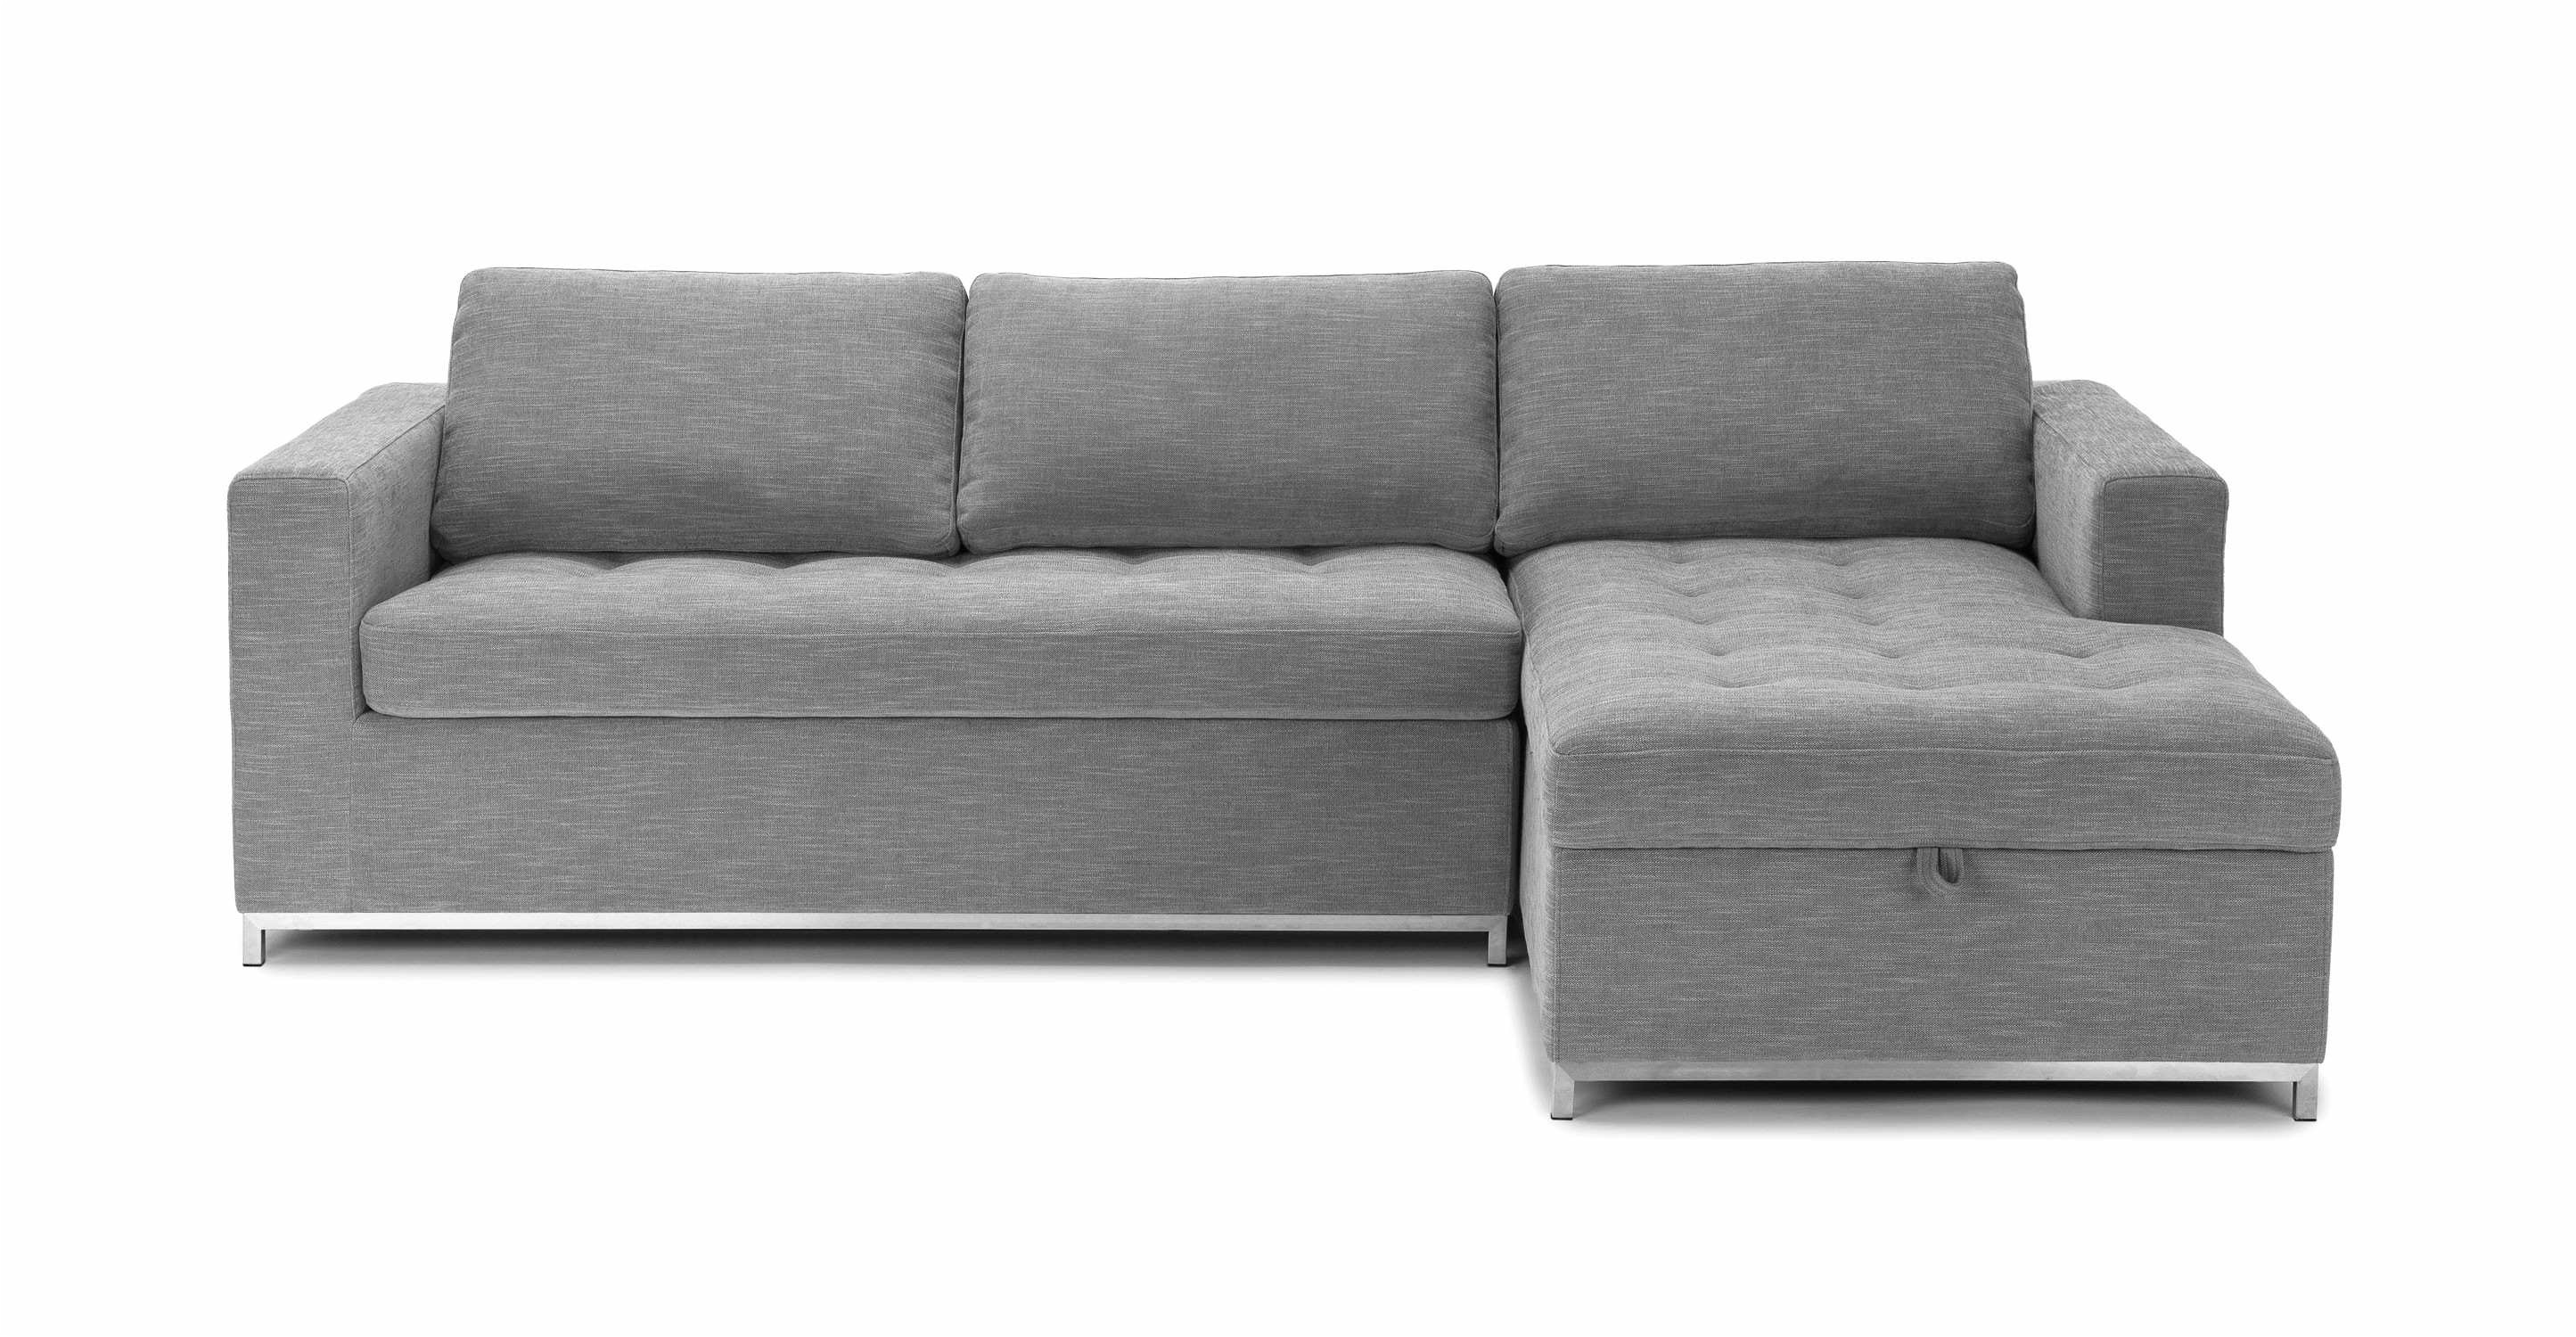 smart sofa beste couch kinderzimmer kleines sofa kinderzimmer genial schlafsofa foto